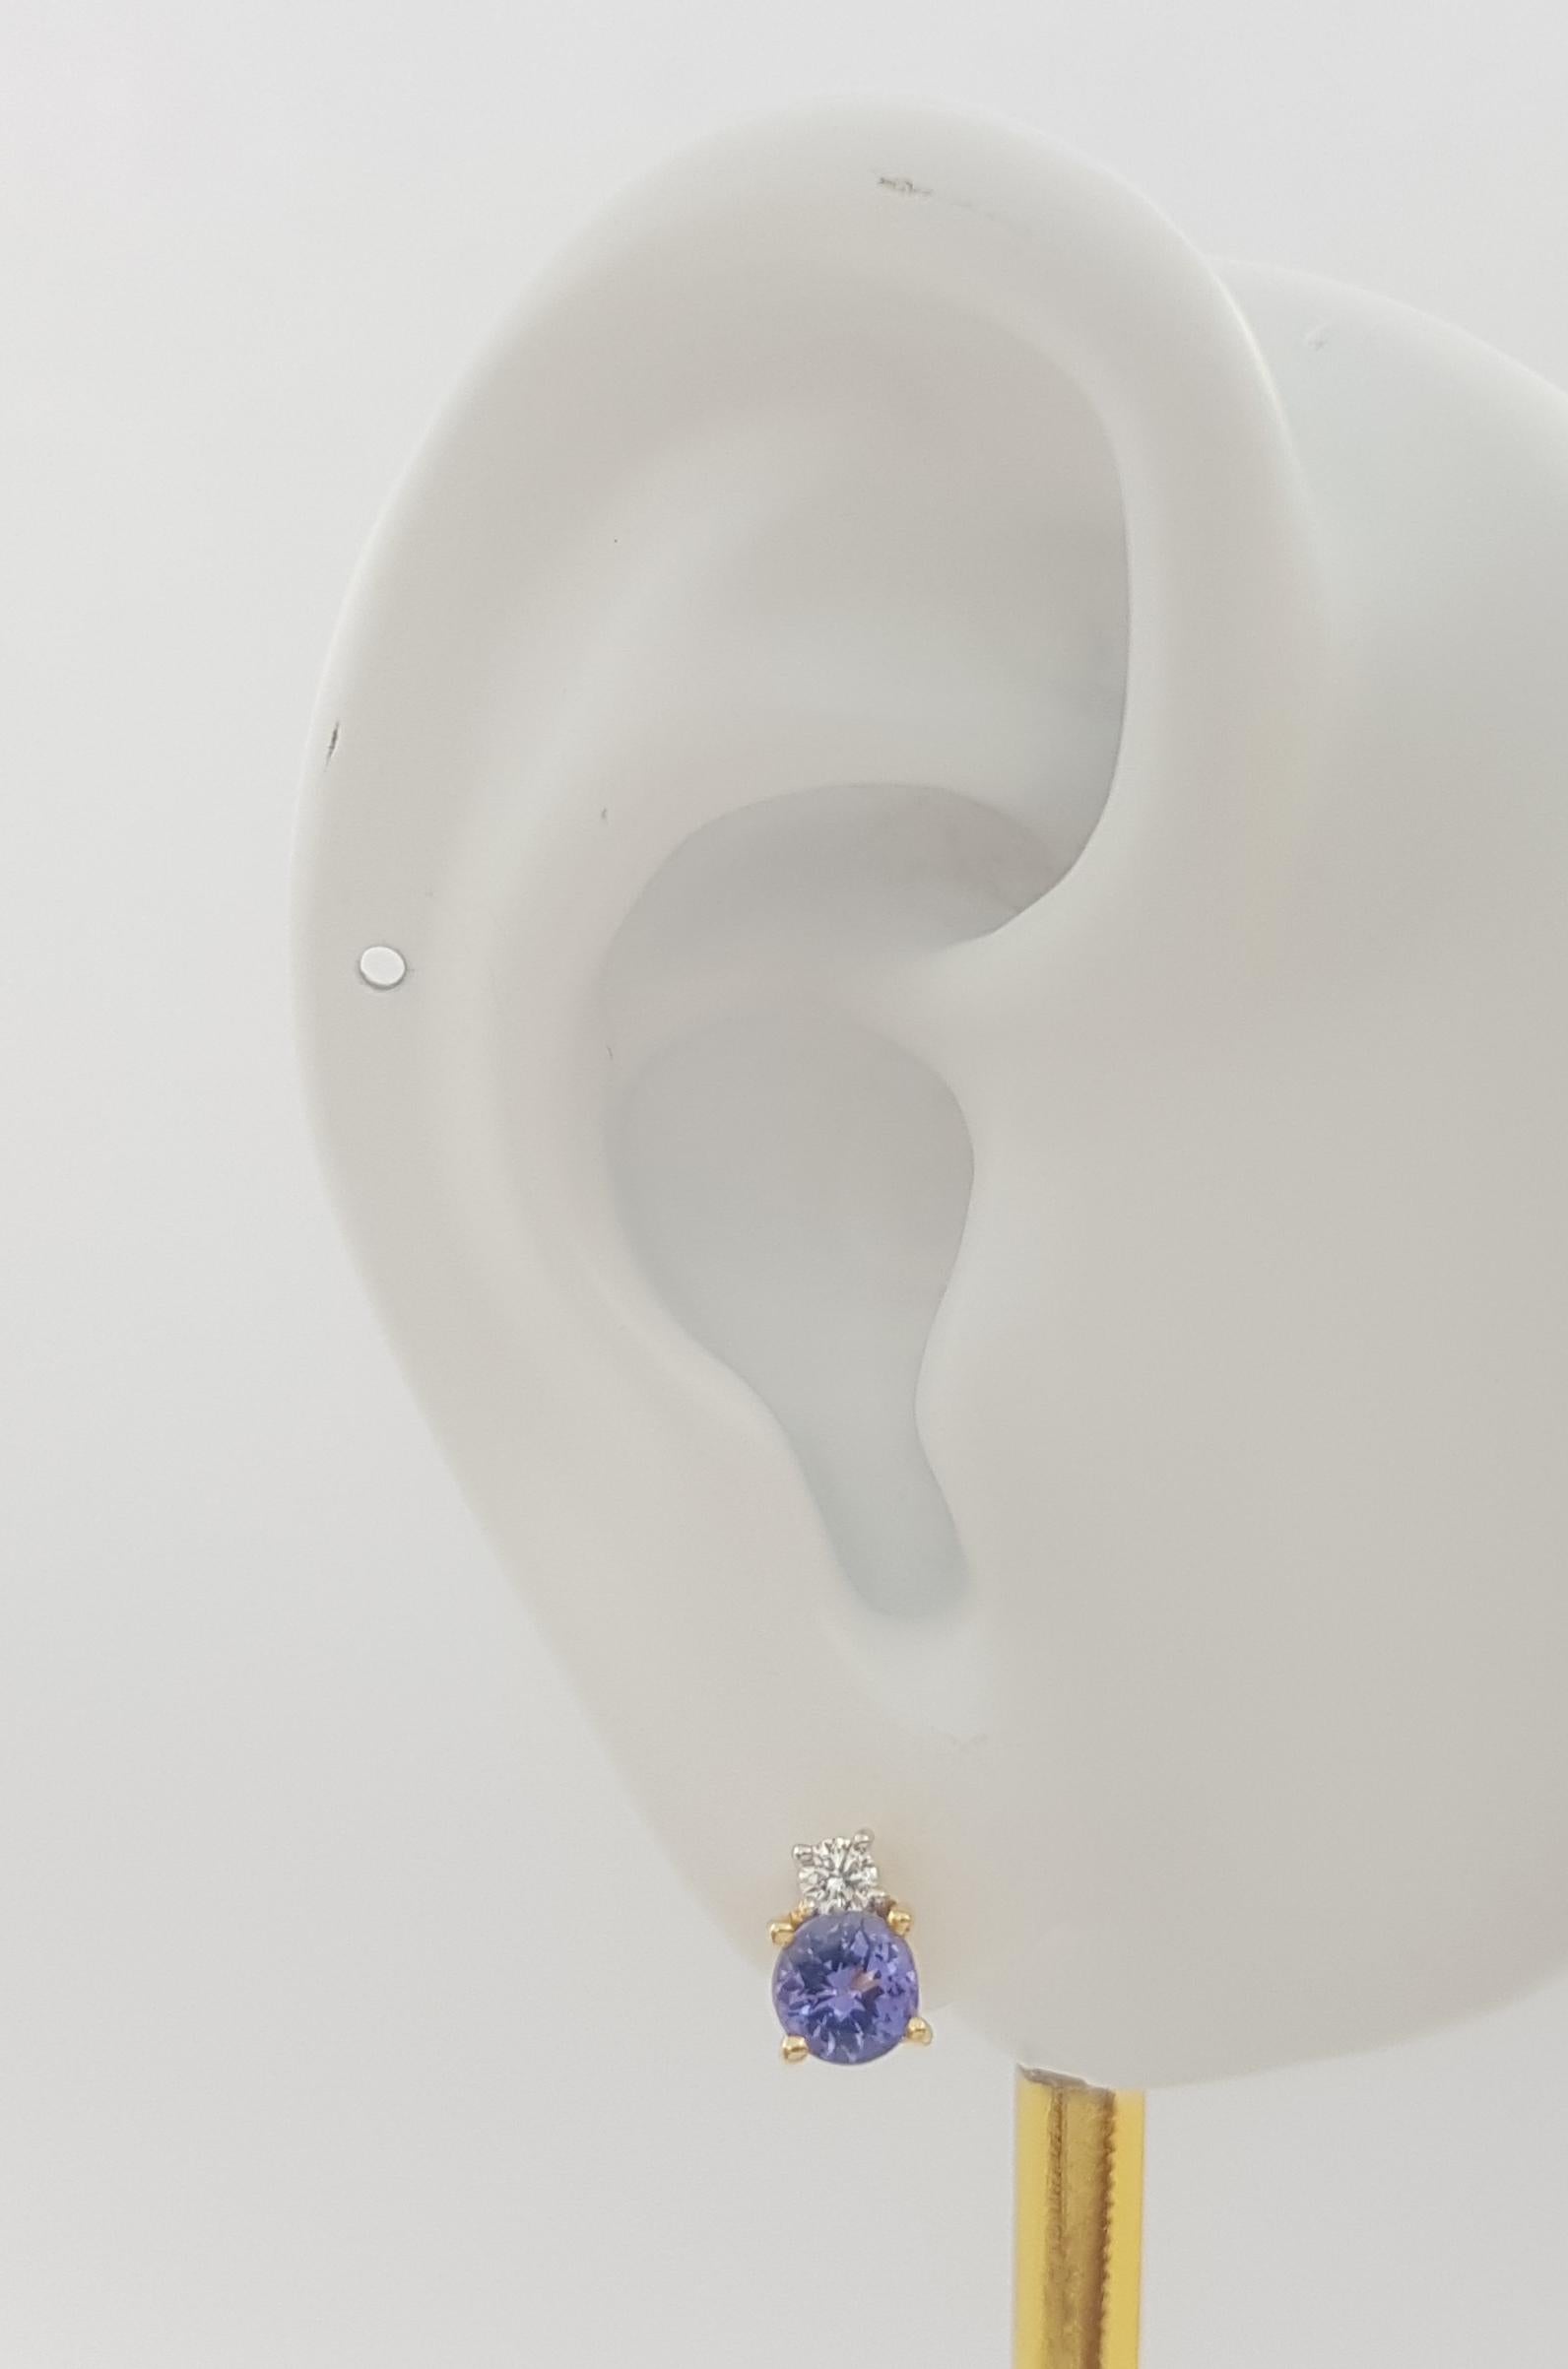 Tansanit 0,90 Karat mit Diamant 0,11 Karat Ohrringe in 18K Goldfassung

Breite: 0,4 cm 
Länge: 0,7 cm
Gesamtgewicht: 3,40 Gramm

